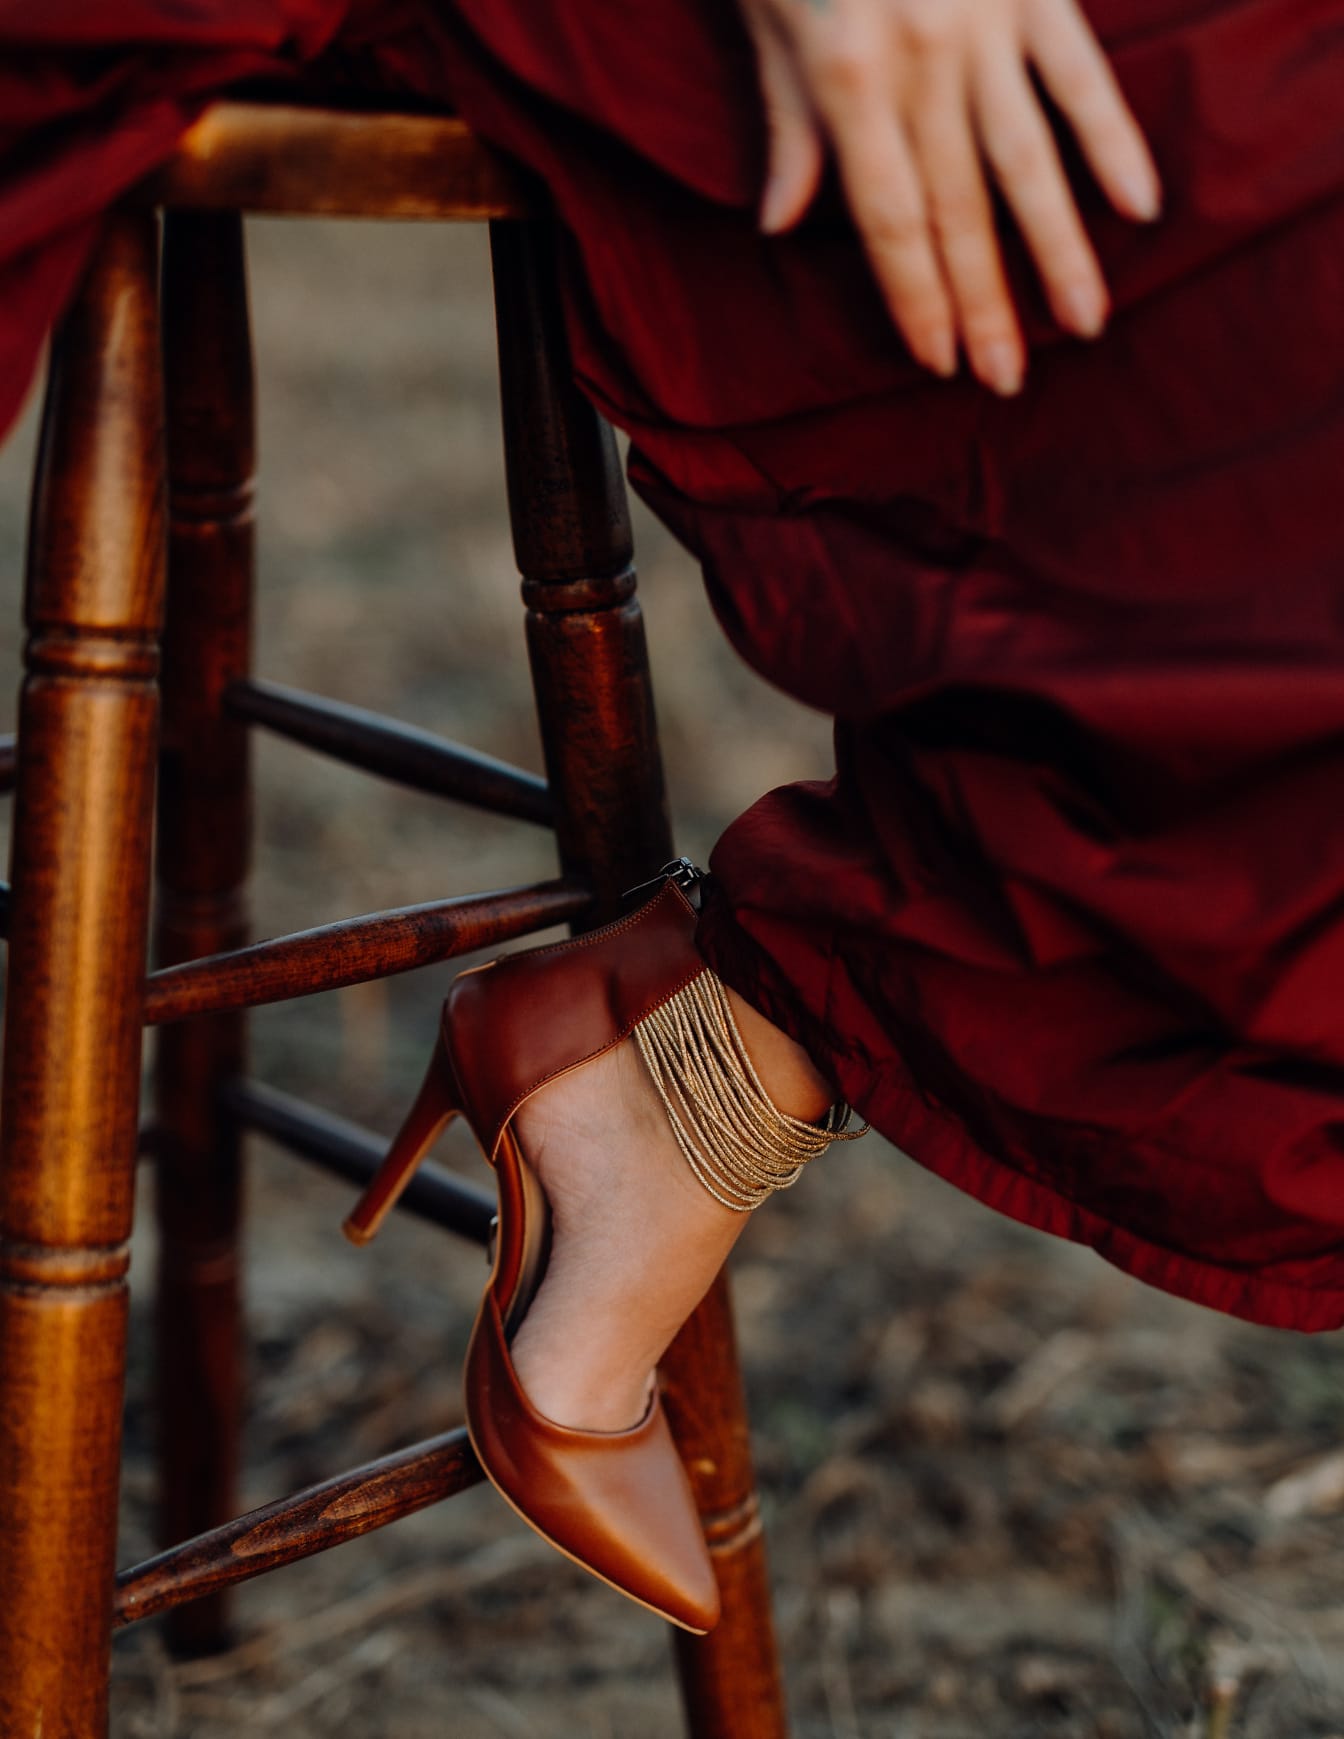 Dunkelrote Sandale am Bein einer Frau im roten Kleid, die auf einem Hocker sitzt